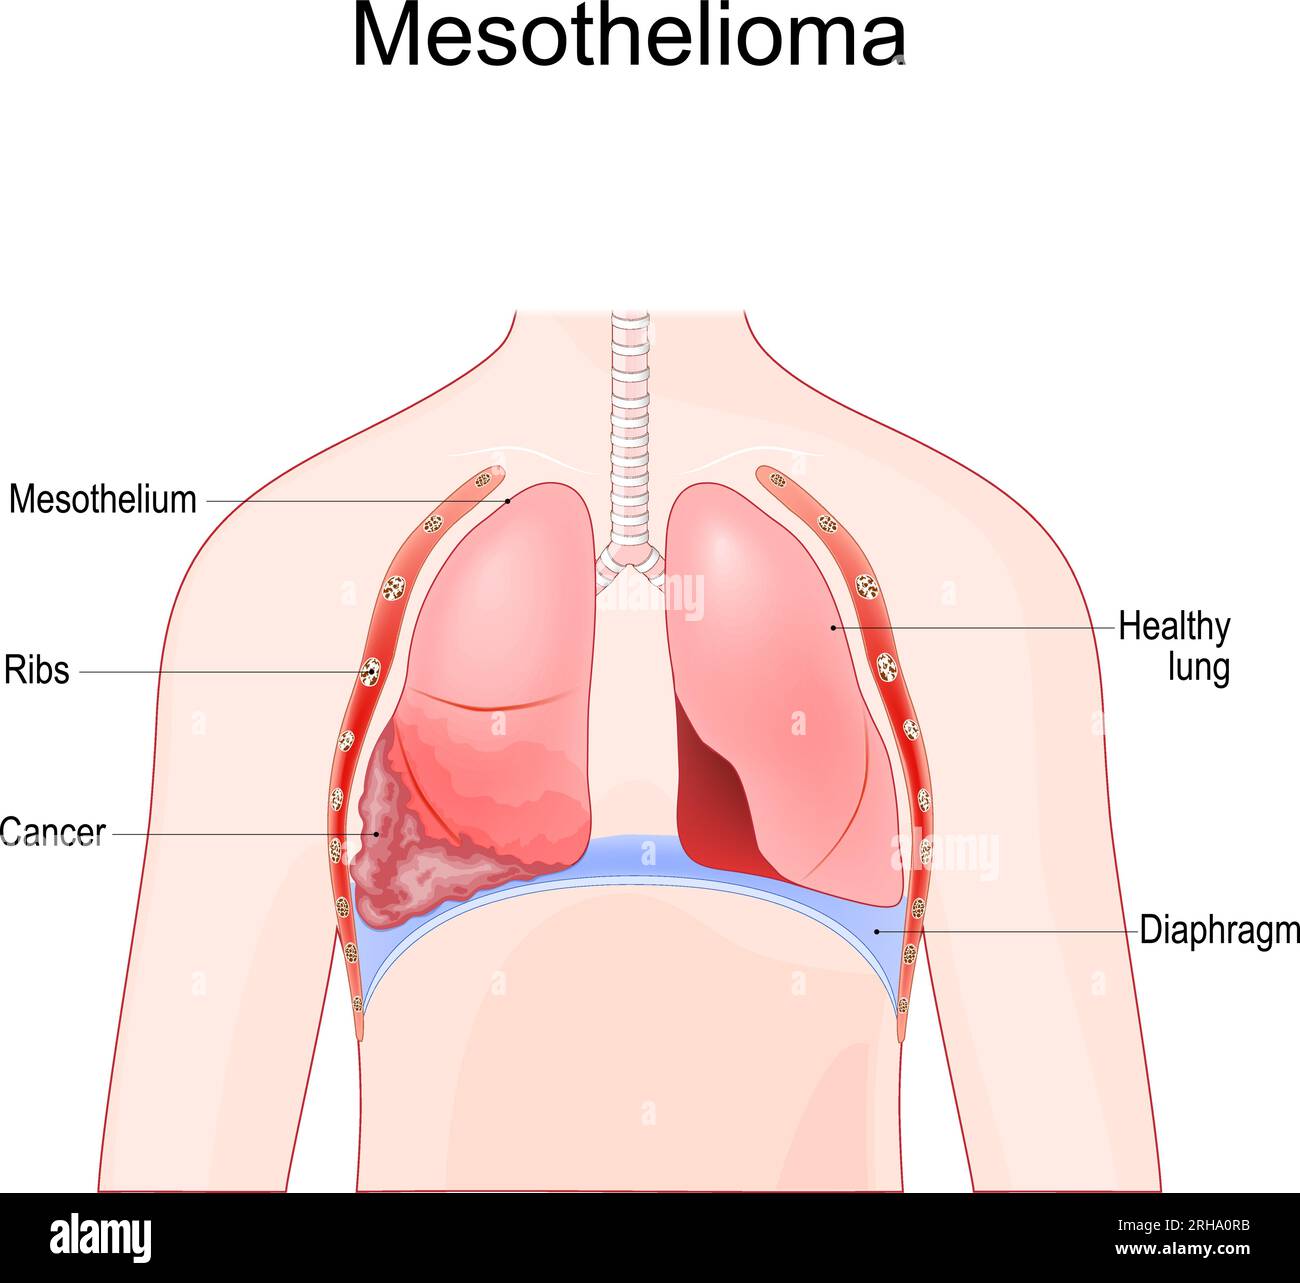 mésothéliome. Tumeur maligne du poumon après exposition à l'amiante. Illustration vectorielle Illustration de Vecteur